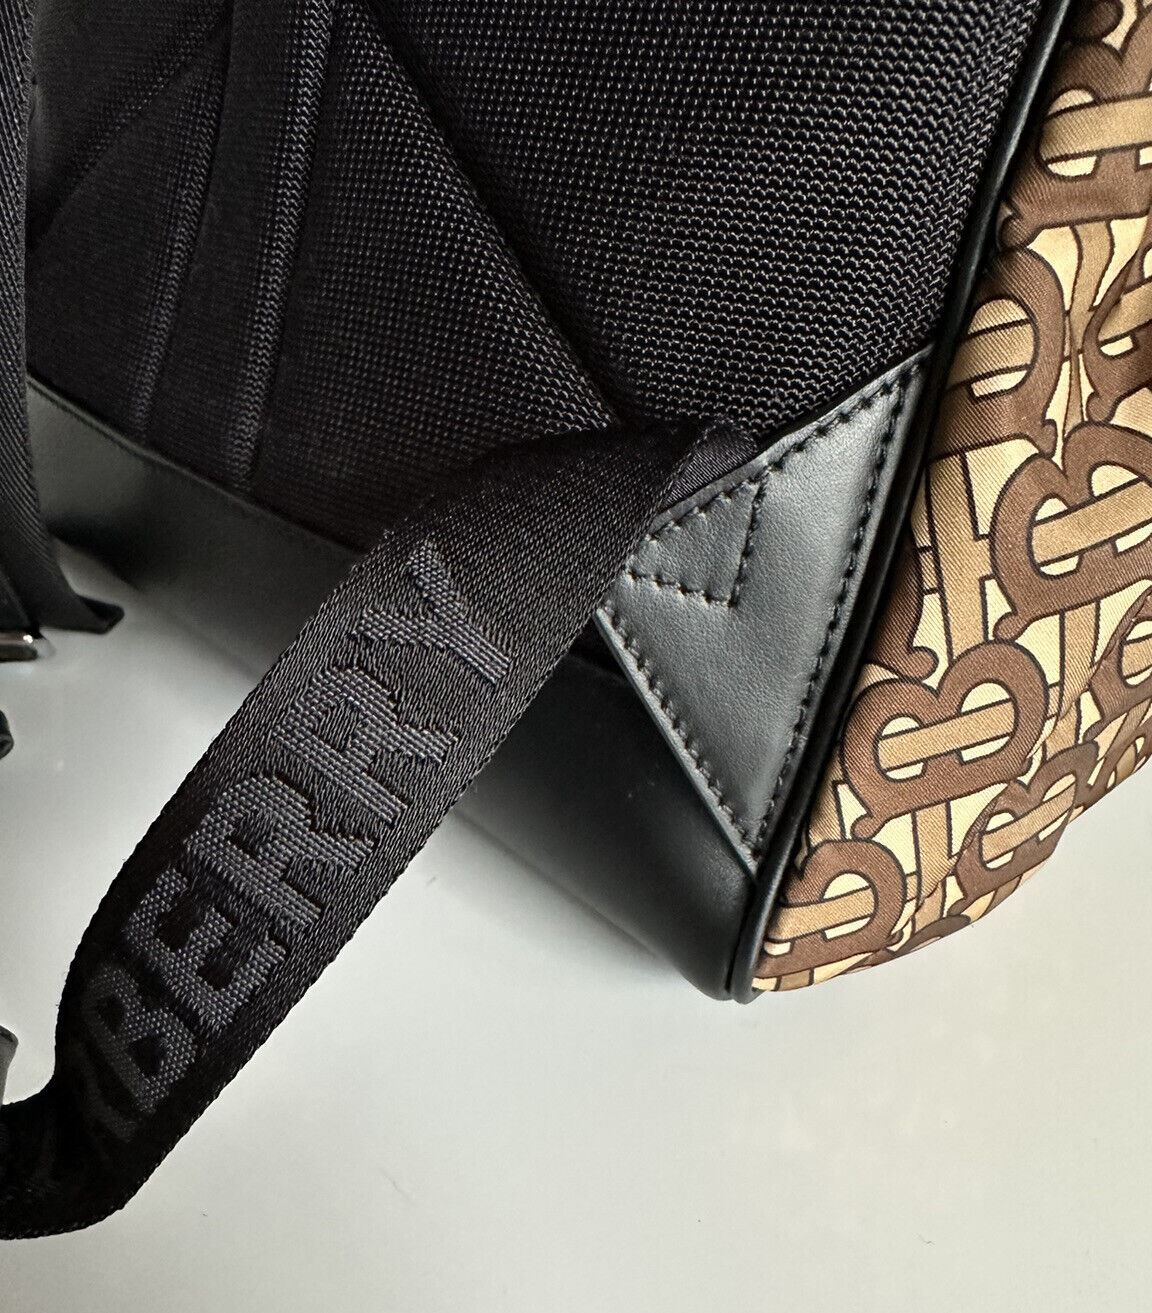 NWT Burberry Monogram Нейлоновый свадебный коричневый рюкзак Сделано в Италии 80448241 